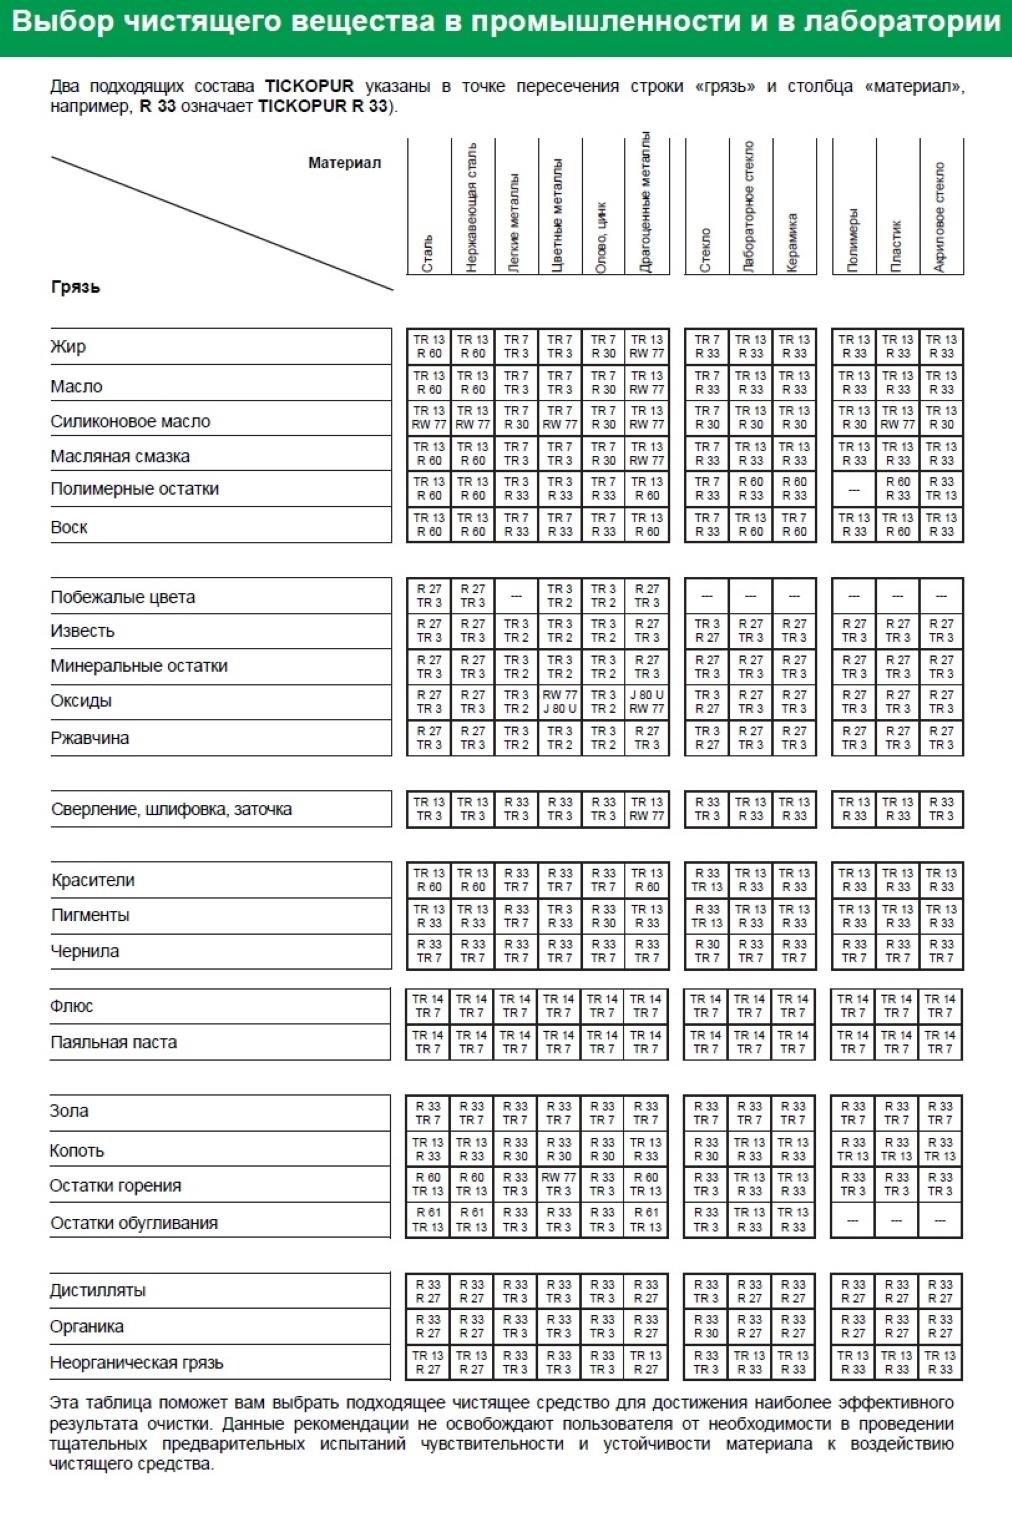 Таблица выбора чистящего вещества TR 13 TICKOPUR